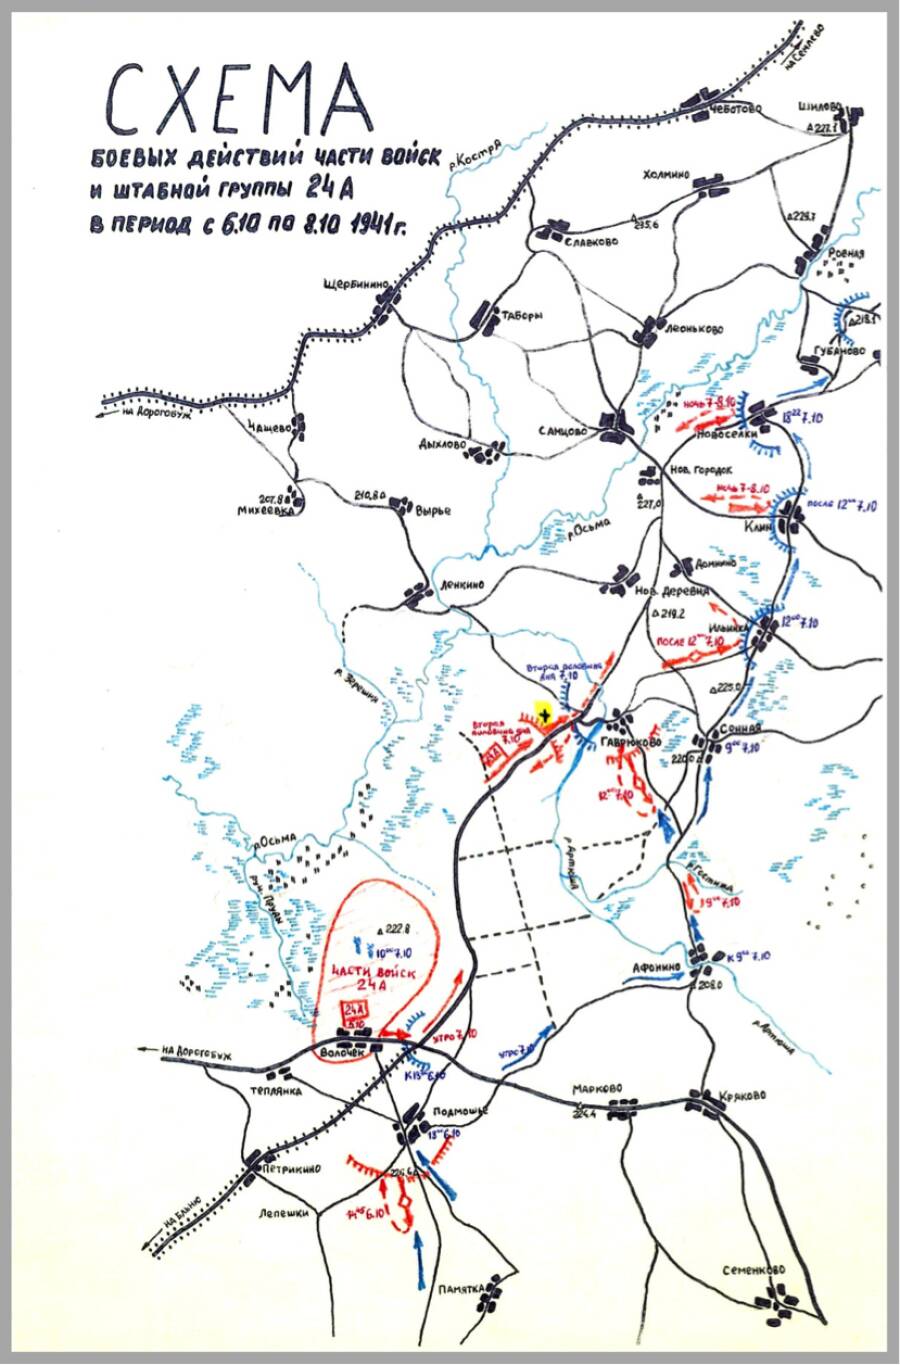 Схема боевых действий в районе д. Волочек – д. Гаврюково 5–8 октября 1941 г. «+» – место обнаружения неизвестного захоронения 20 воинов РККА